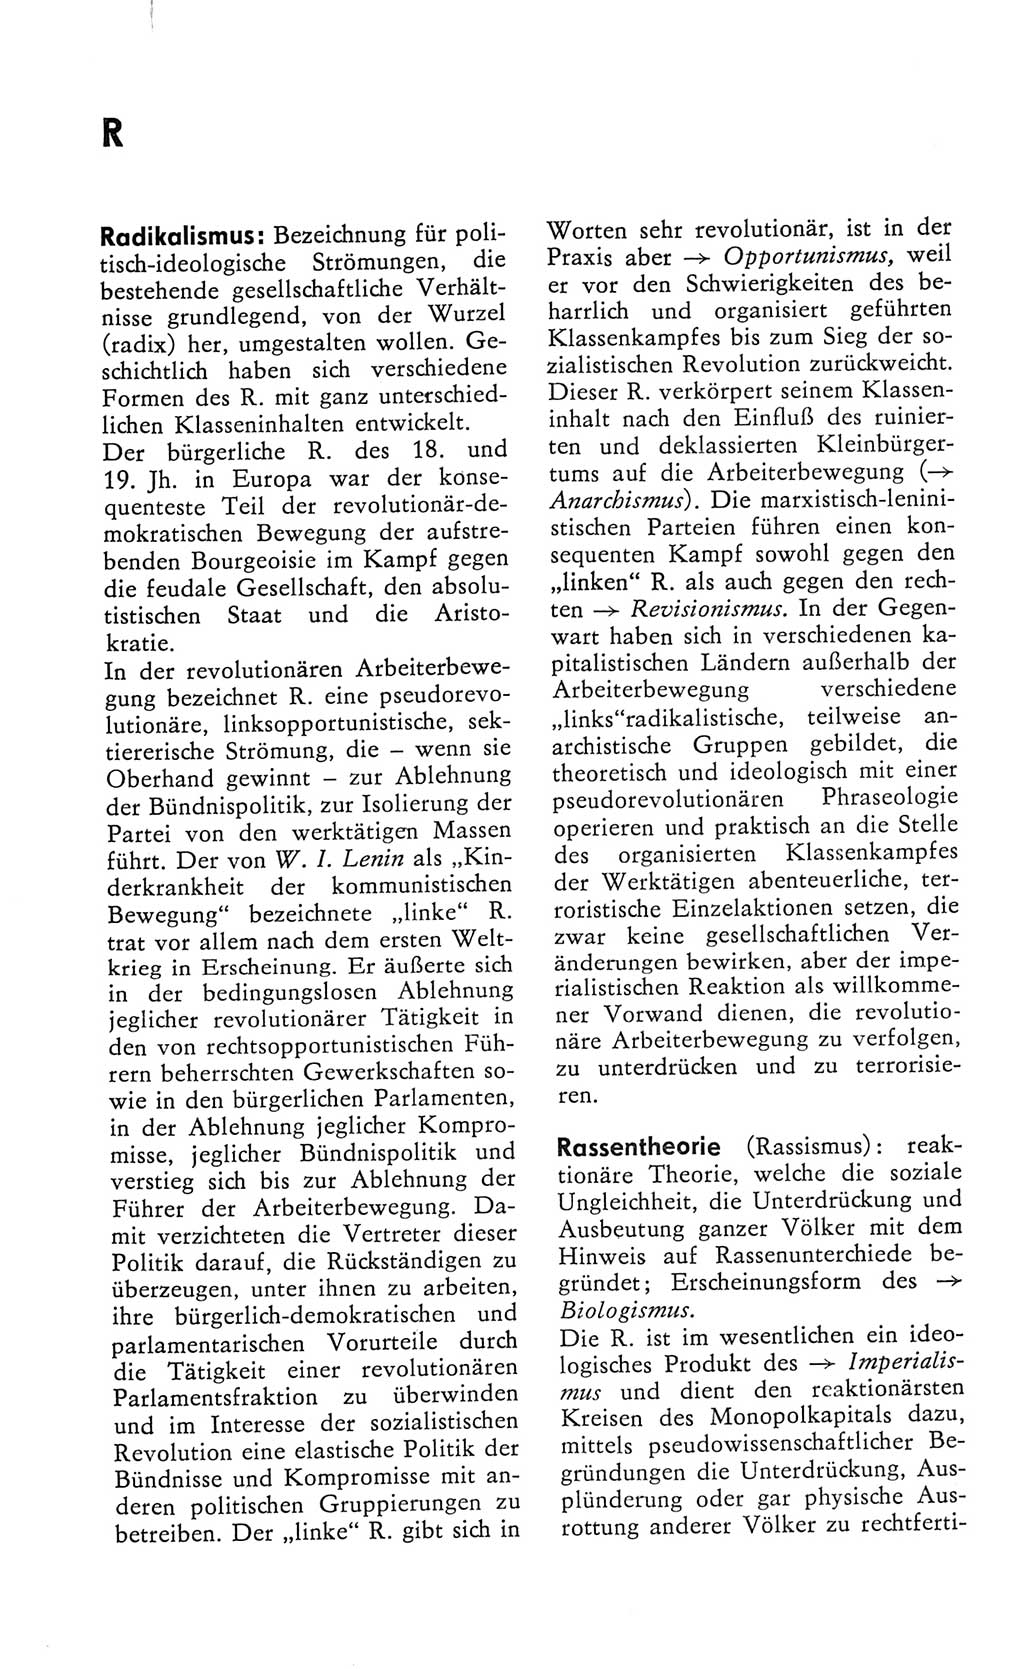 Kleines Wörterbuch der marxistisch-leninistischen Philosophie [Deutsche Demokratische Republik (DDR)] 1982, Seite 274 (Kl. Wb. ML Phil. DDR 1982, S. 274)